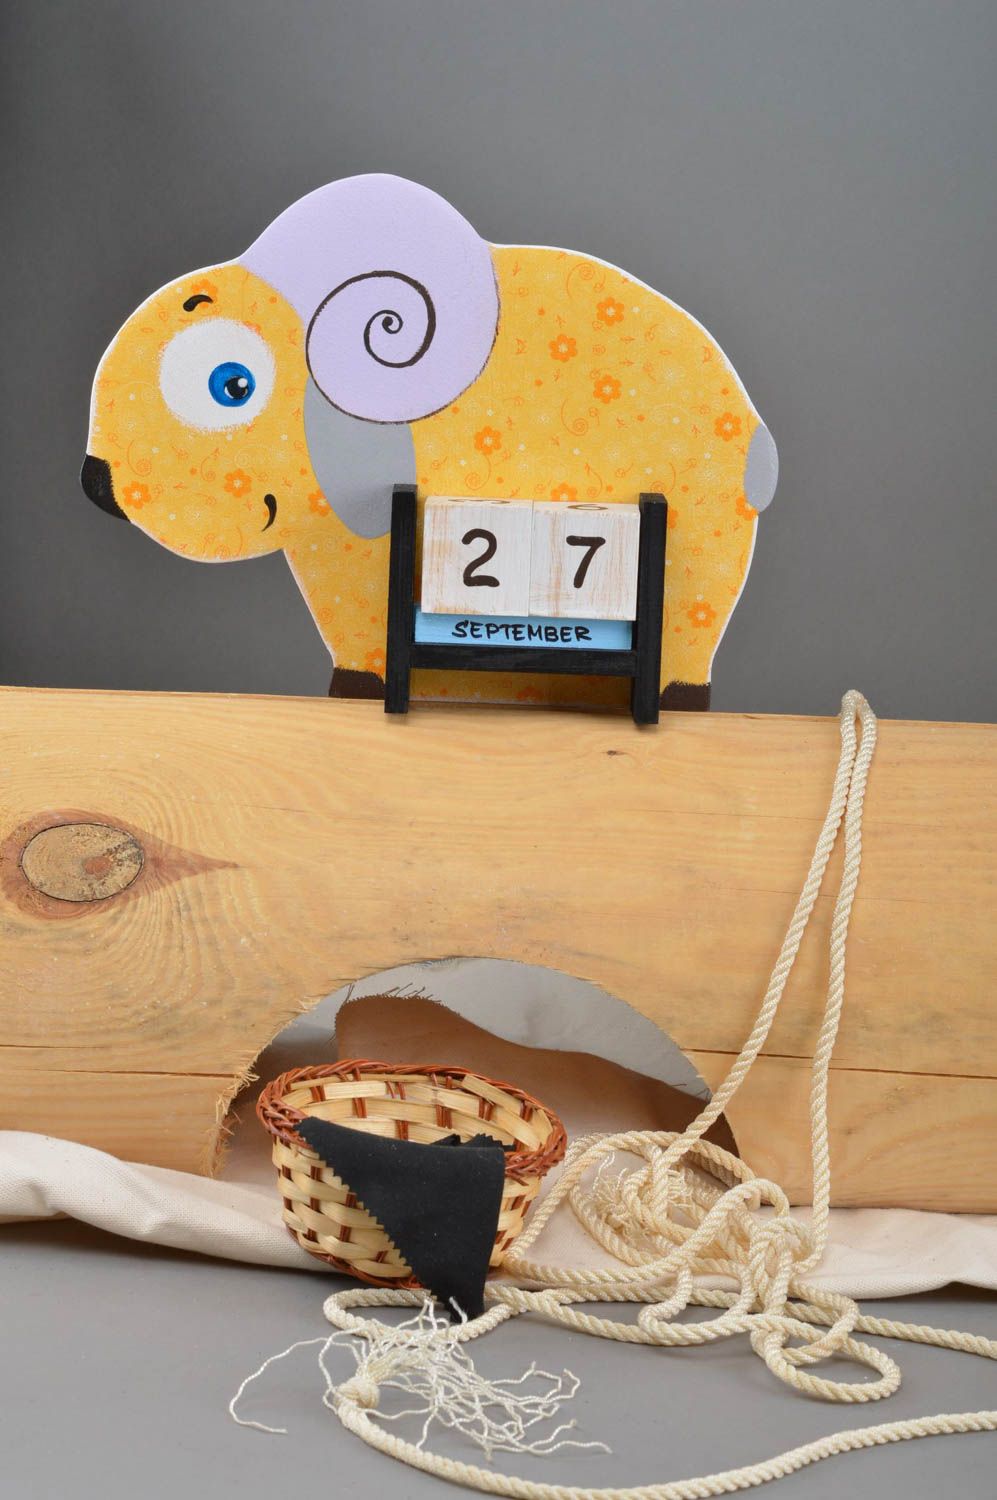 Календарь в виде овечки небольшой желтый небольшого размера для детей хэнд мейд фото 1